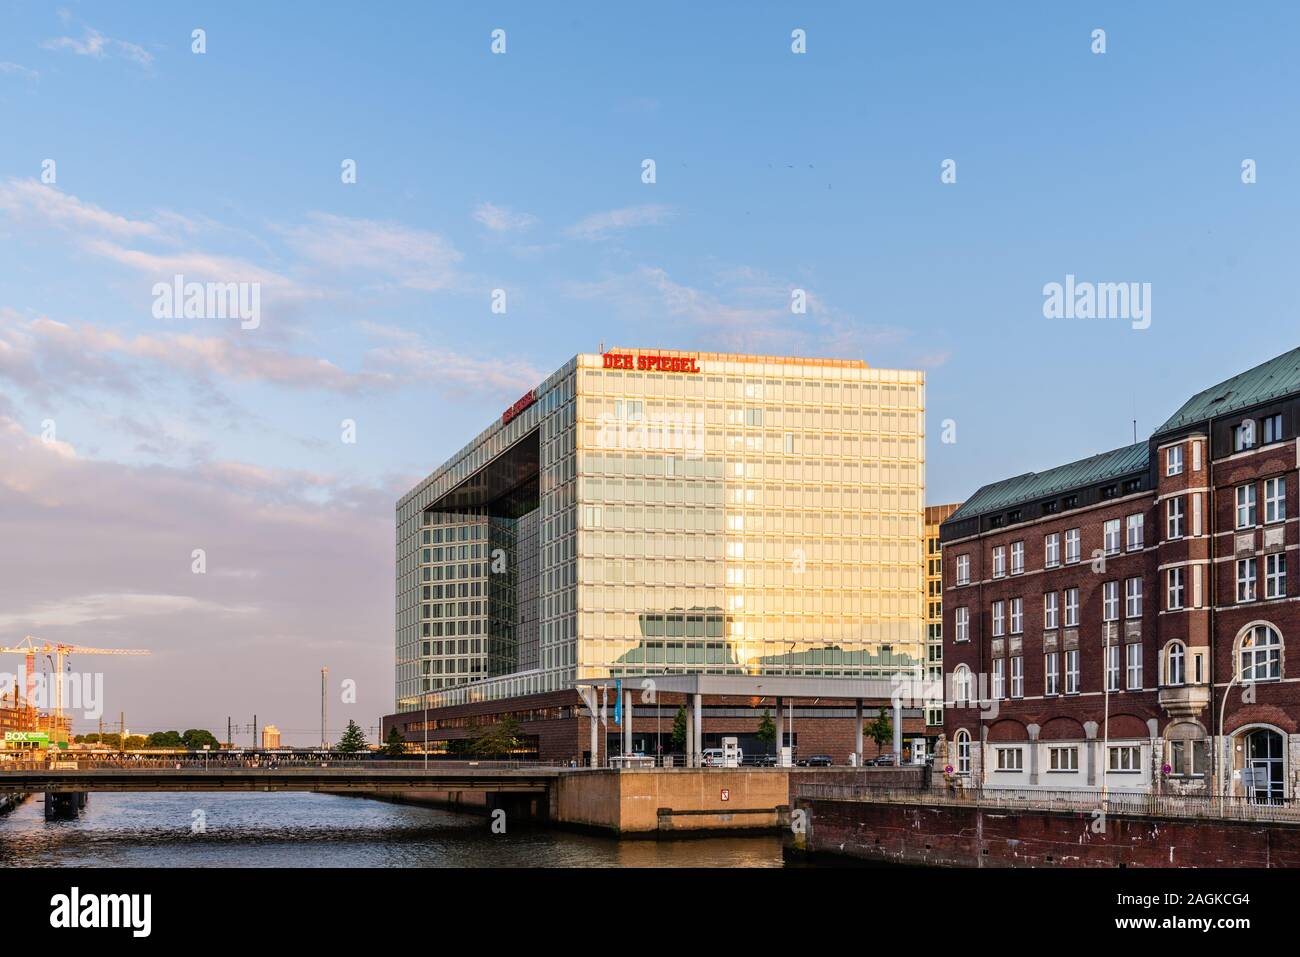 Hamburg, Germany - August 3, 2019: Der Spiegel headqurter in Hamburg. It is a German weekly news magazine Stock Photo